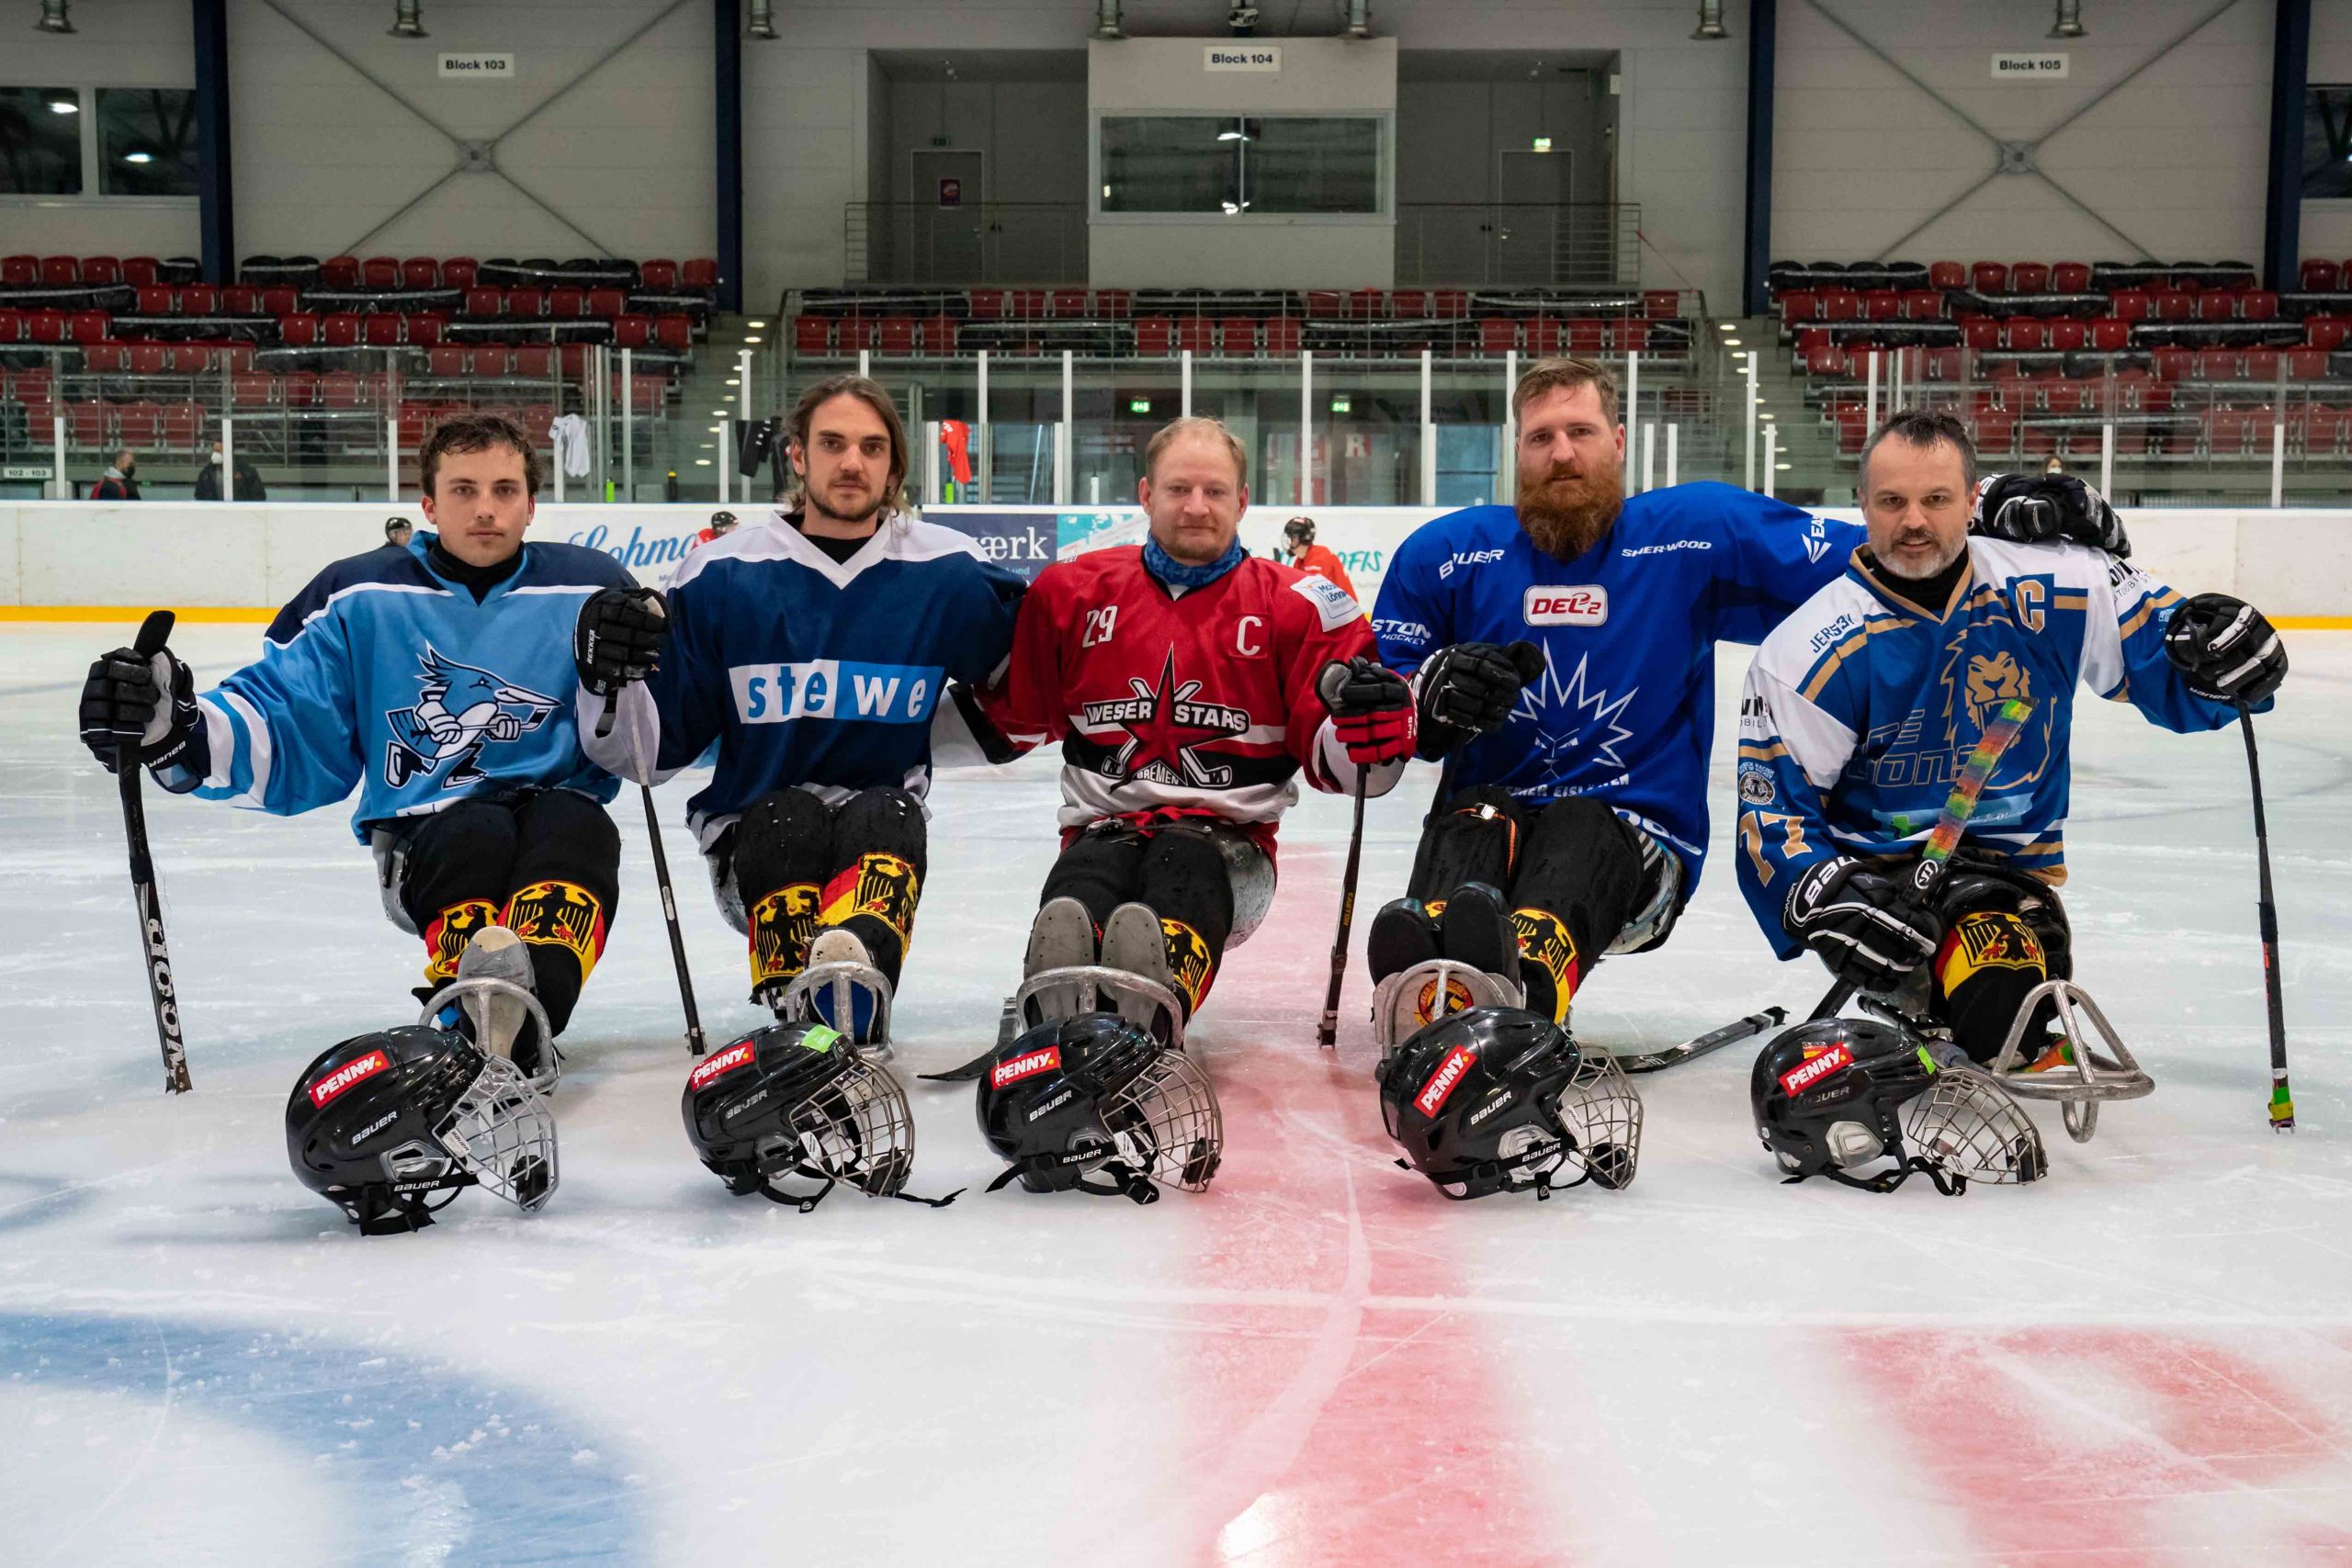 Die Para-Eishockey-Nationalspieler freuen sich über die Kooperation mit PENNY (v.l.n.r): Veit Mühlhans, Ingo Kuhli-Lauenstein, Jacob Wolff, Christian Pilz, Jörg Wedde